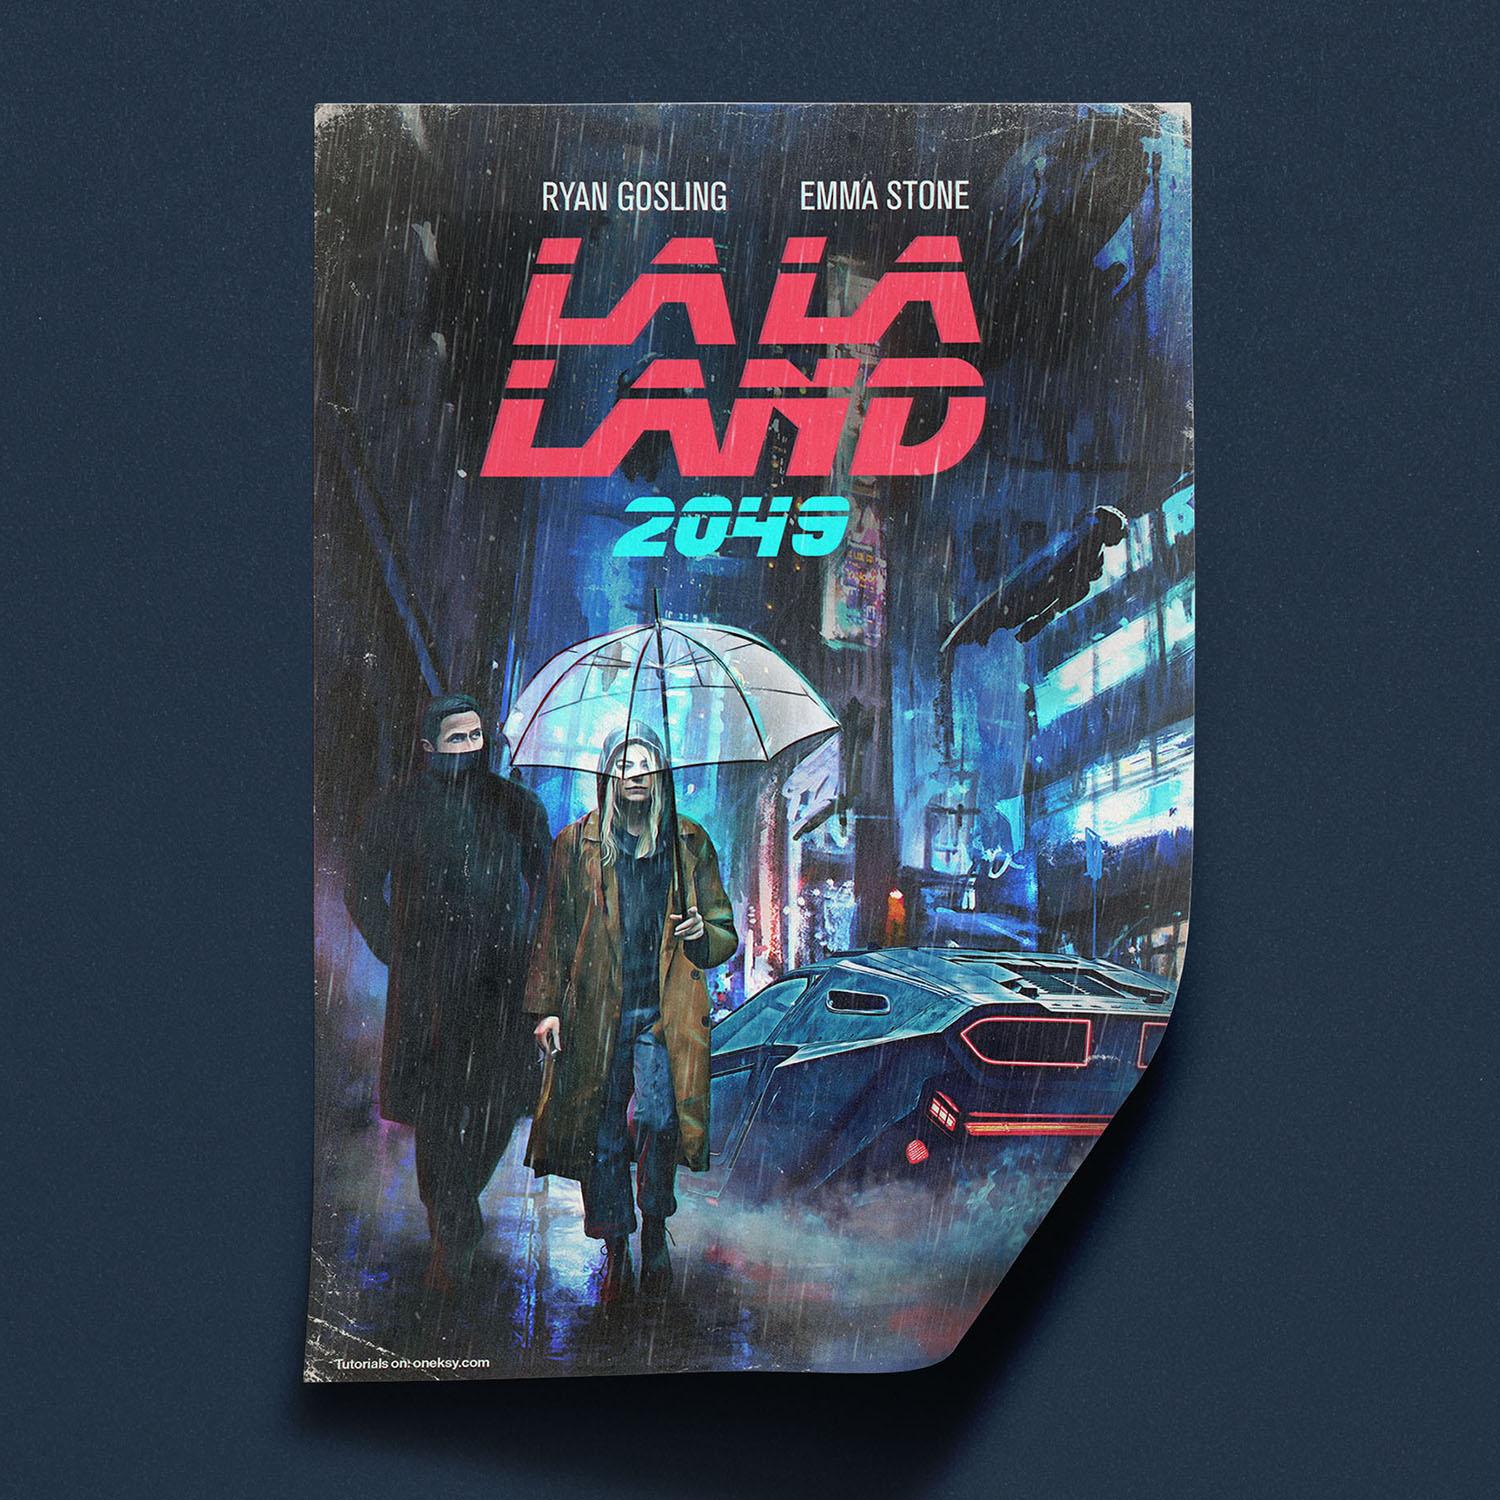 La La Land Wallpaper - La La Land 2049 , HD Wallpaper & Backgrounds